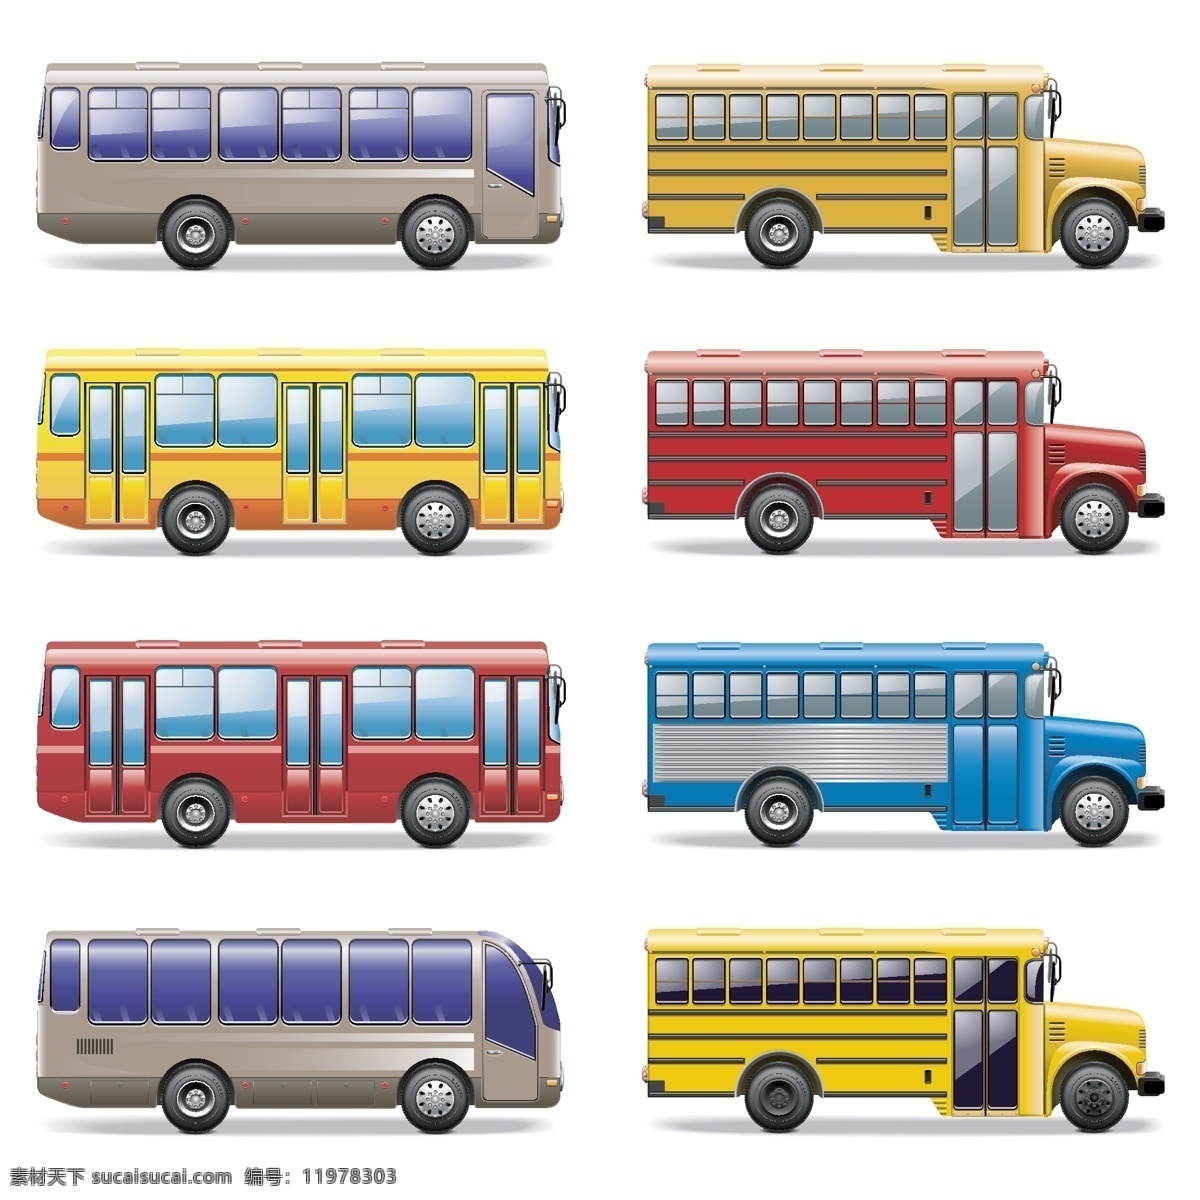 公交车 校车 巴士 汽车汽车设计 汽车模型 手绘汽车 手绘 交通工具 现代科技